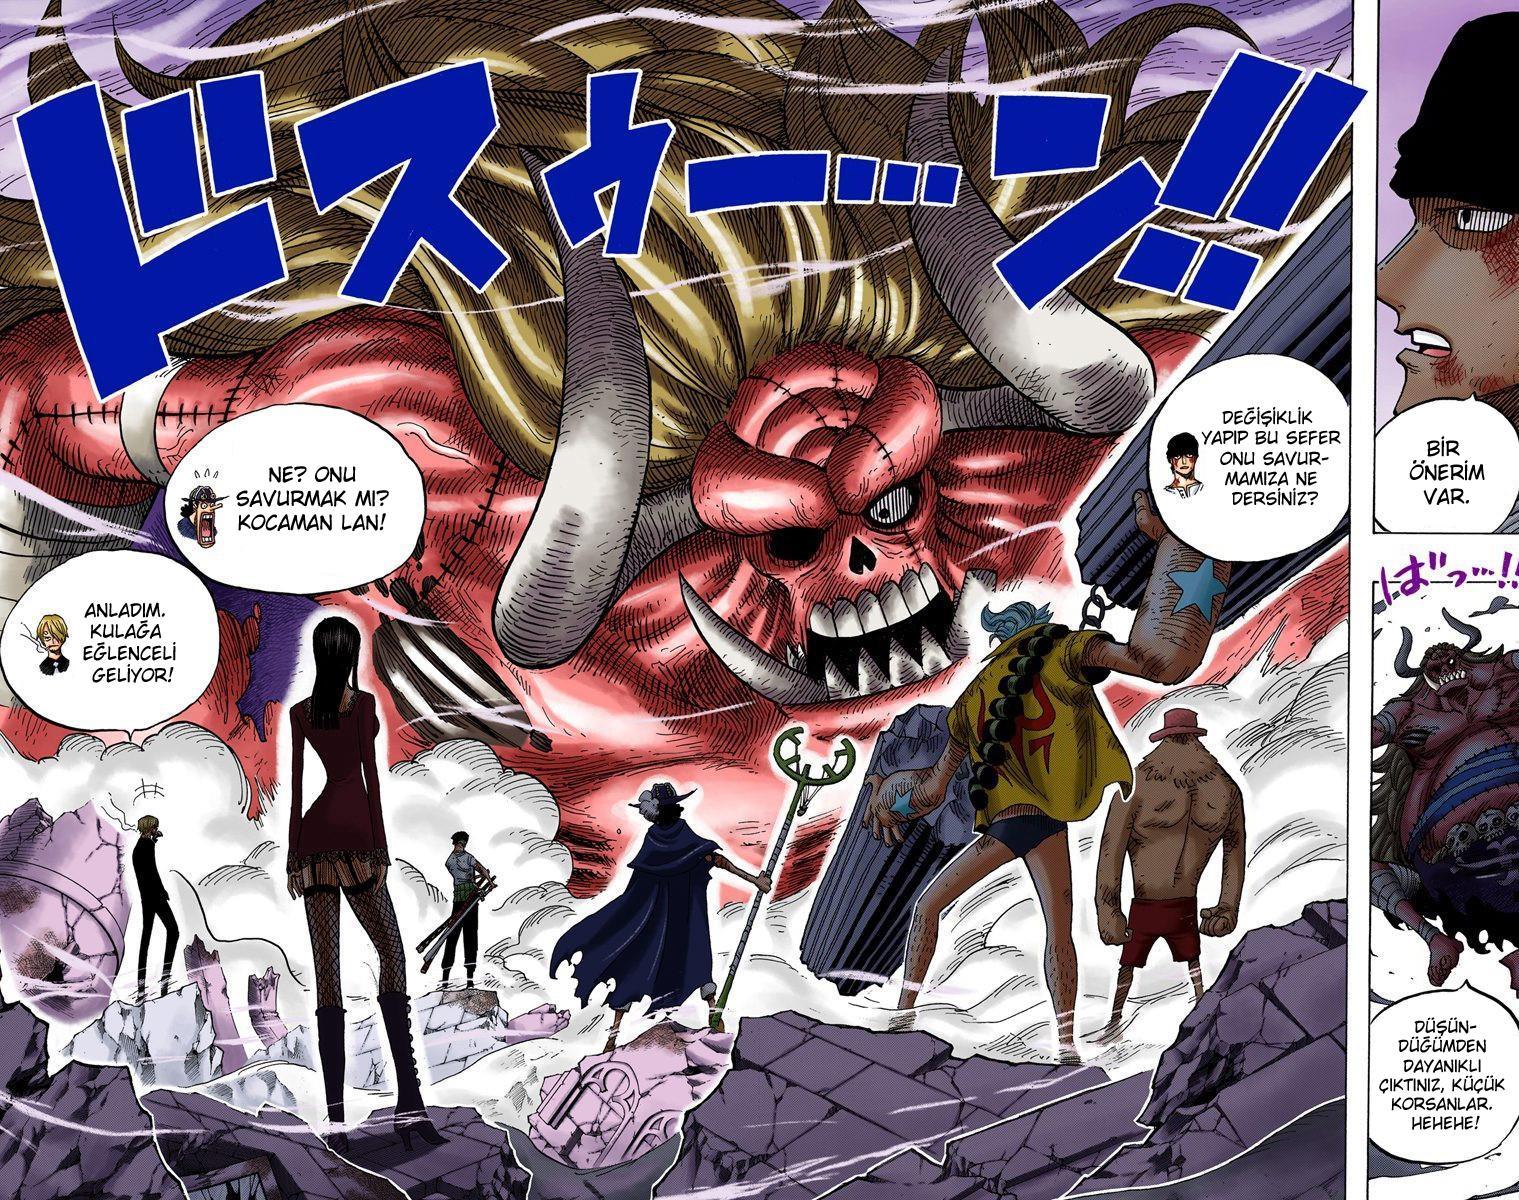 One Piece [Renkli] mangasının 0472 bölümünün 3. sayfasını okuyorsunuz.